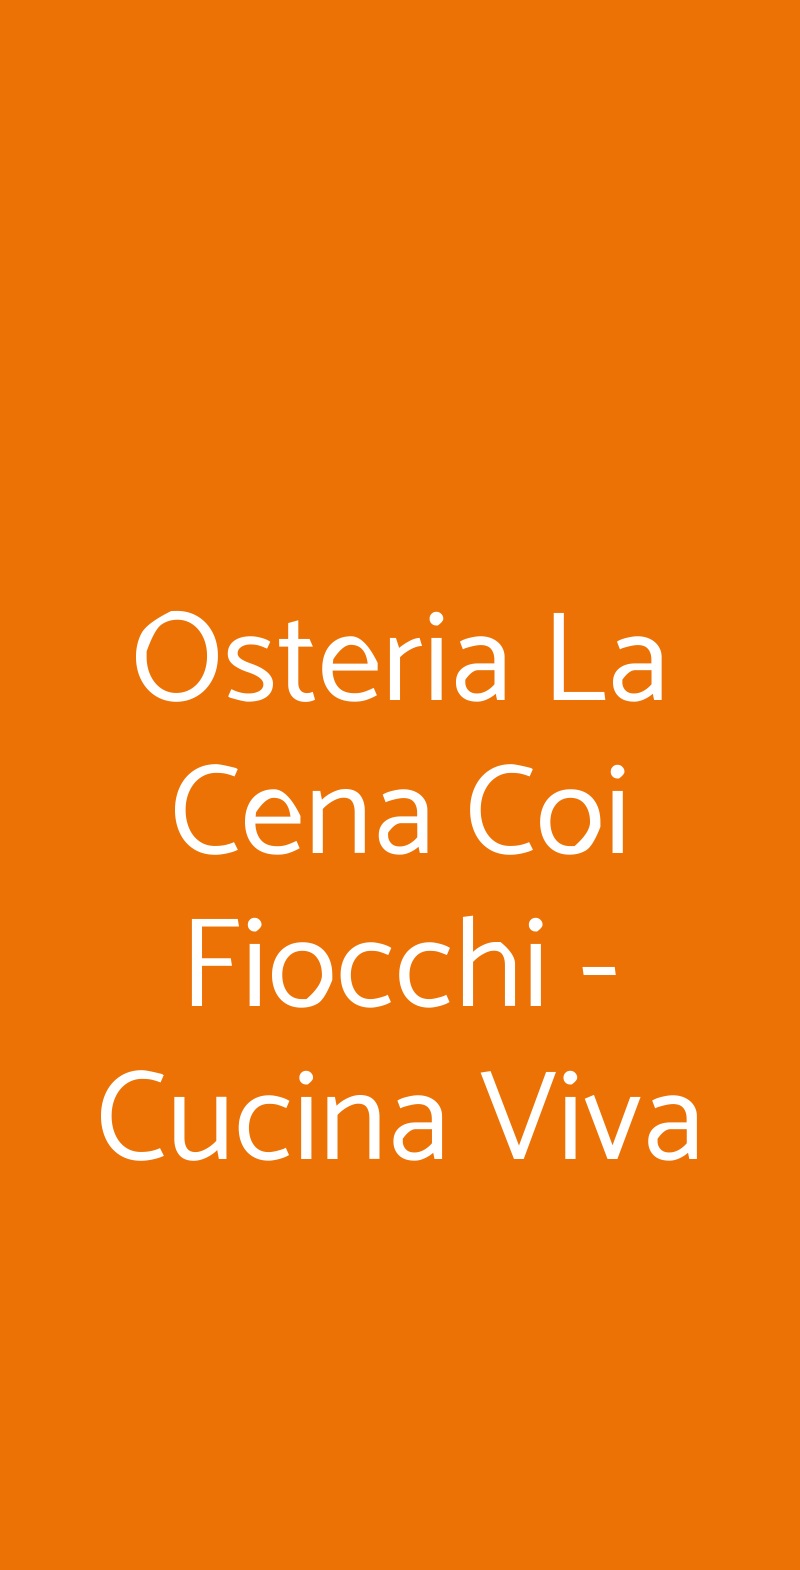 Osteria La Cena Coi Fiocchi - Cucina Viva Torino menù 1 pagina